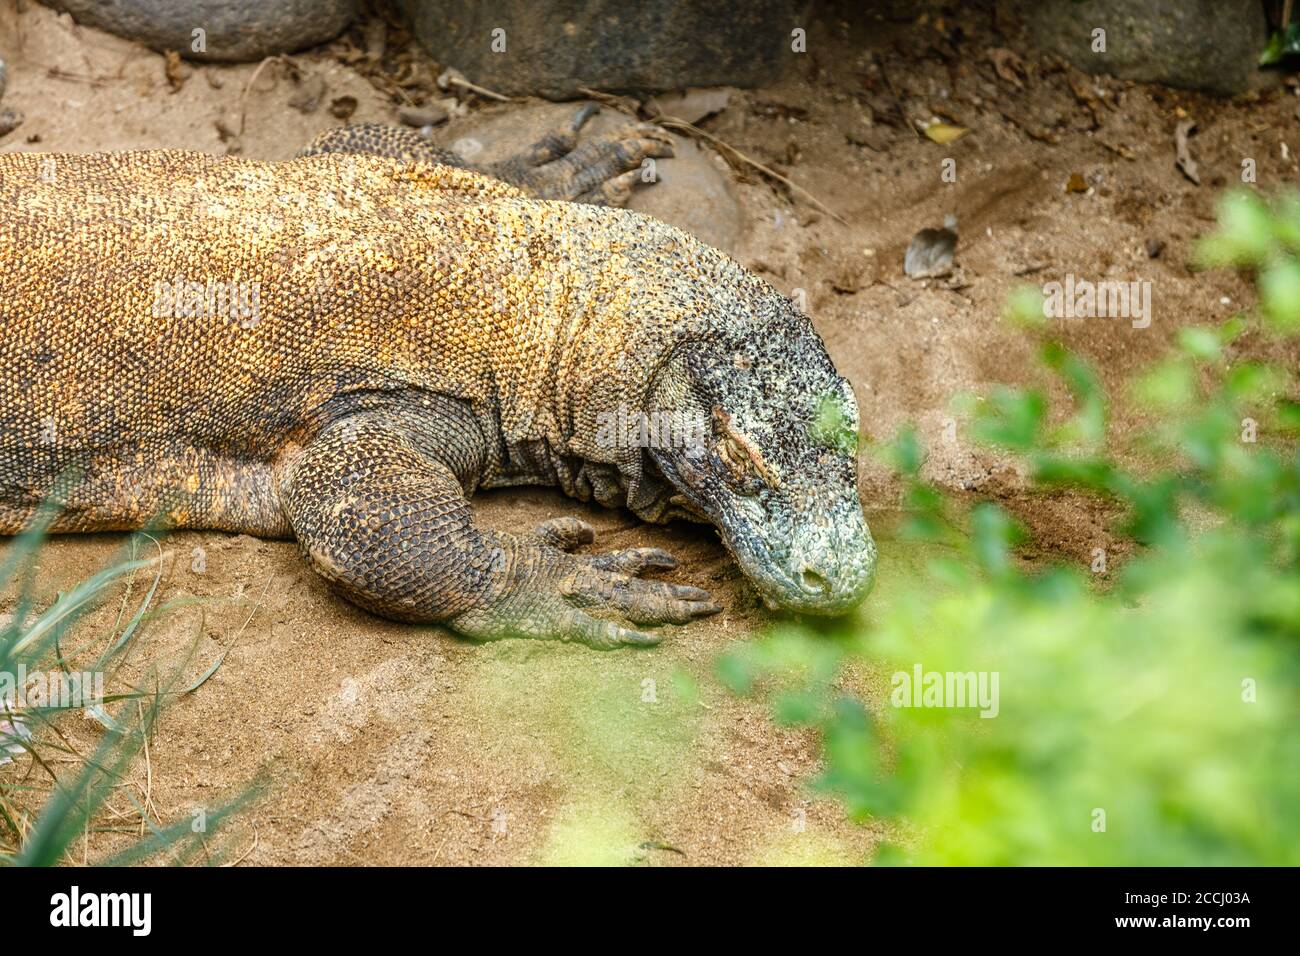 Komodo dragon (Komodo monitor), Varanus komodoensis, the largest extant species of lizard. Indonesia. Stock Photo